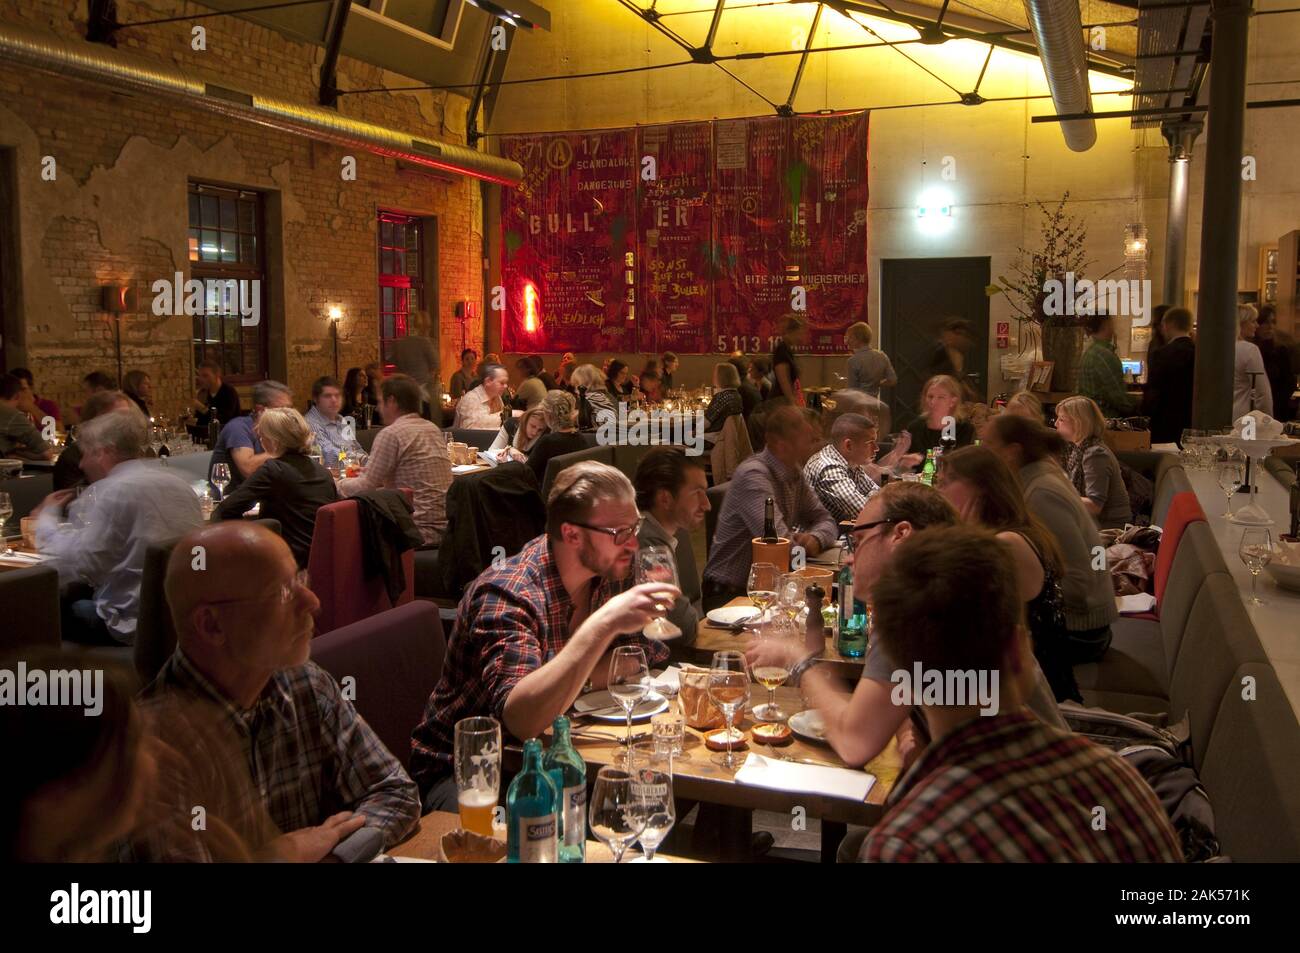 Schanzenviertel: Restaurant "bullerei" von Tim Mälzer in der Lagerstr. 34b,  Hamburg | Verwendung weltweit Stockfotografie - Alamy